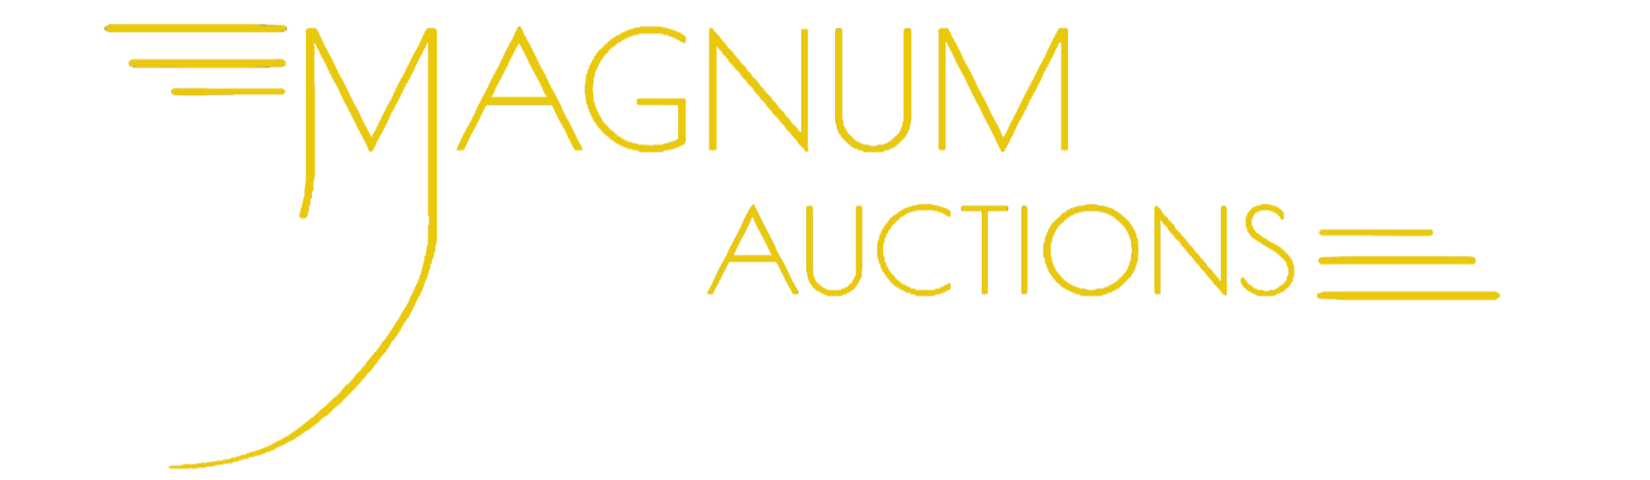 Magnum Auctions